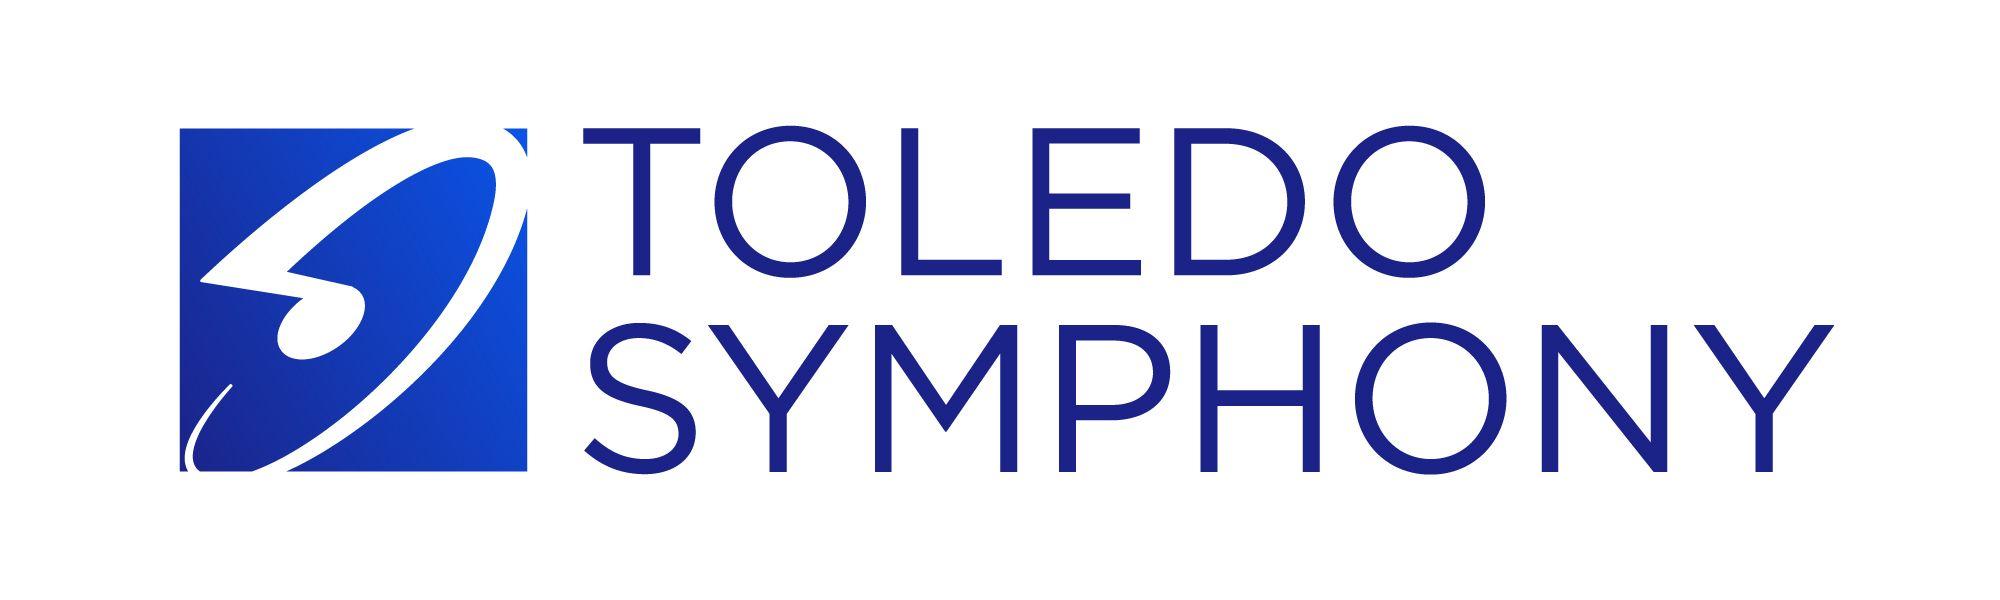 Symphony Logo - Toledo Symphony Orchestra Branding Assets Symphony Orchestra